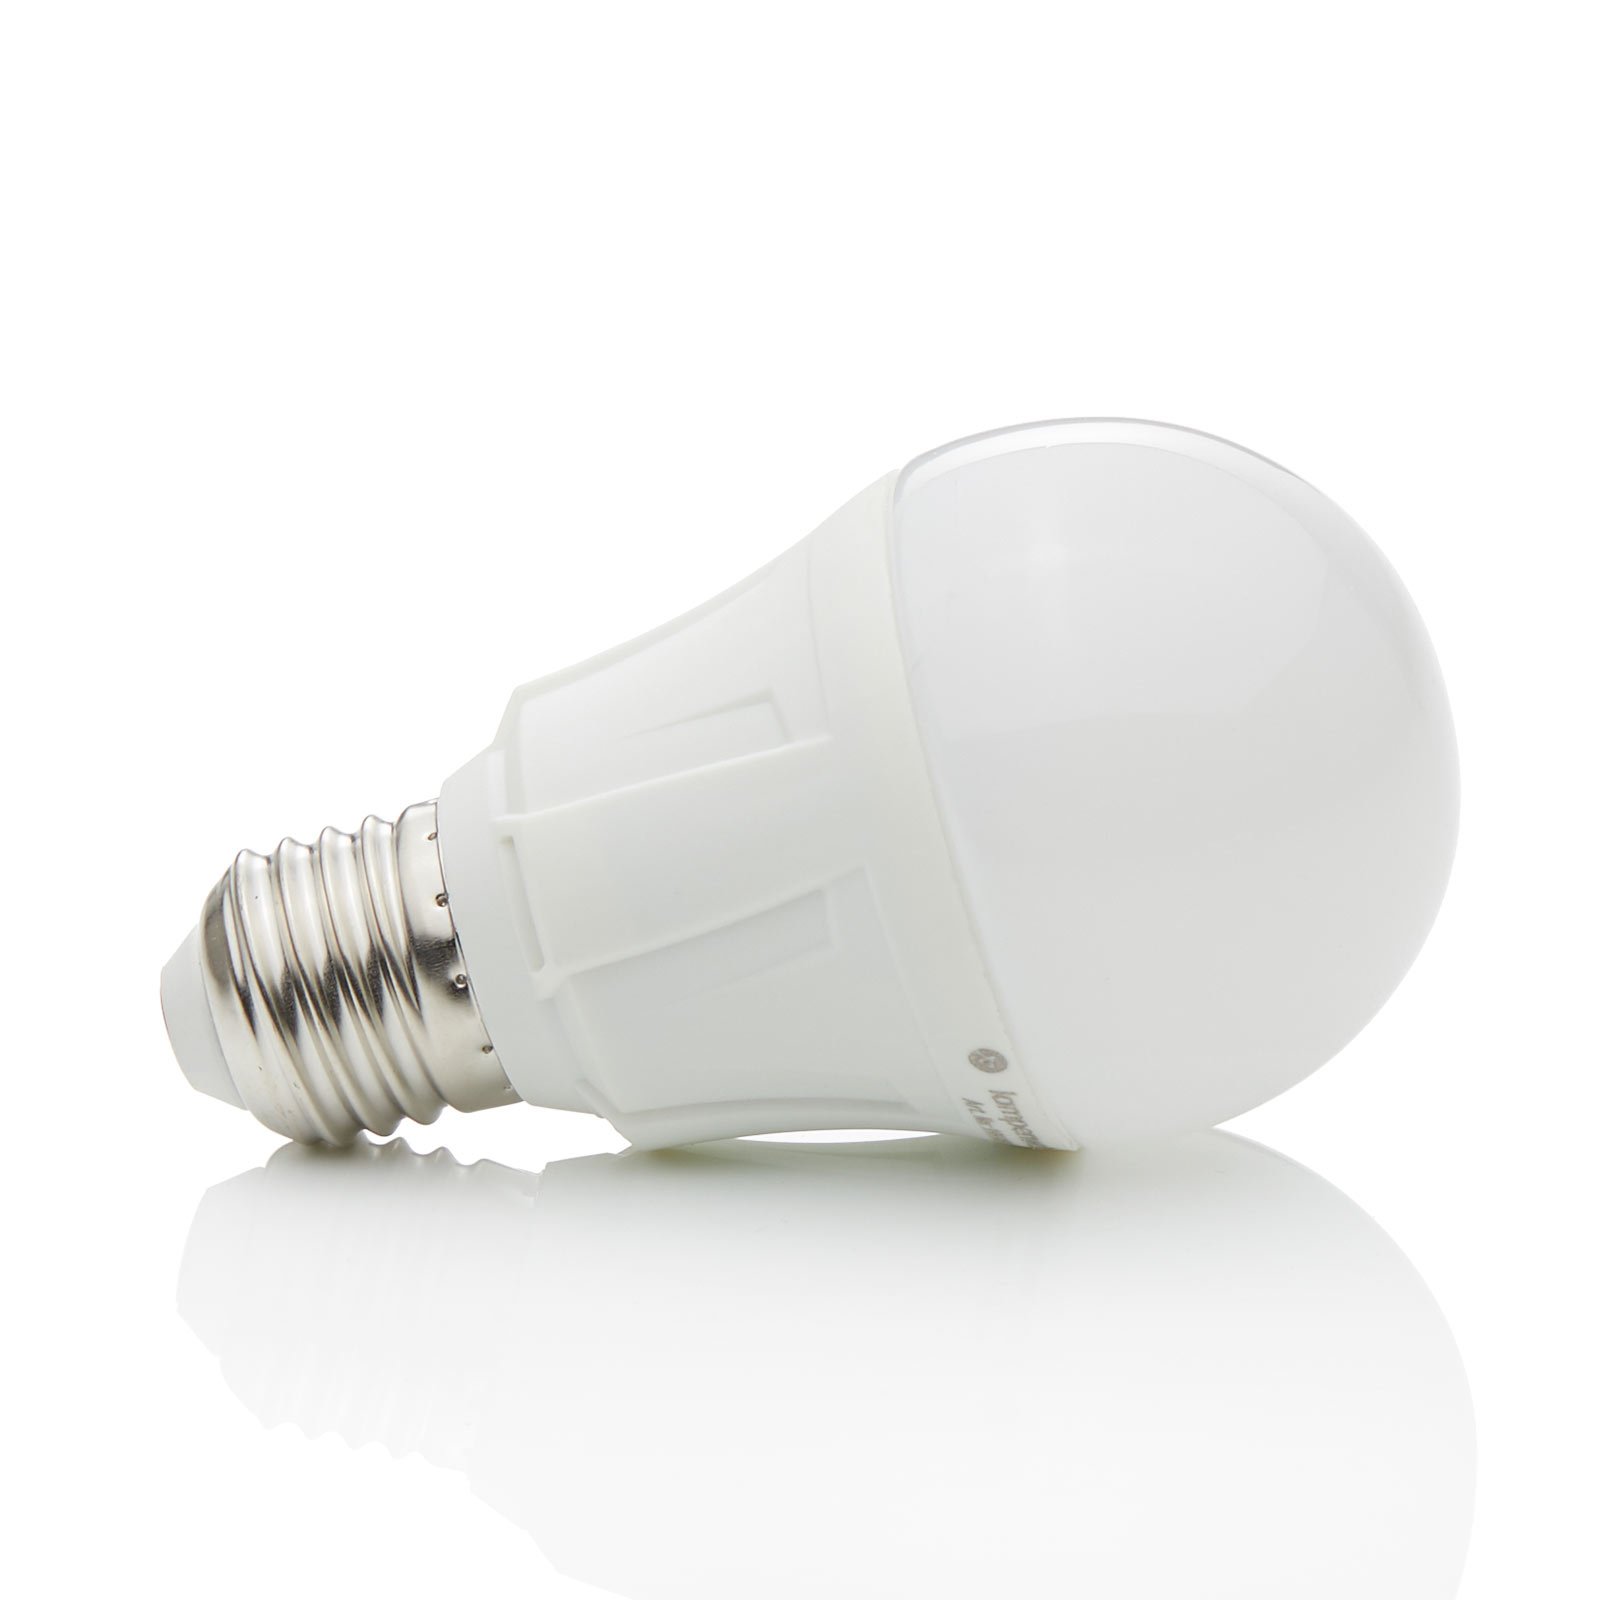 E27 11 W 830 ampoule LED blanc chaud